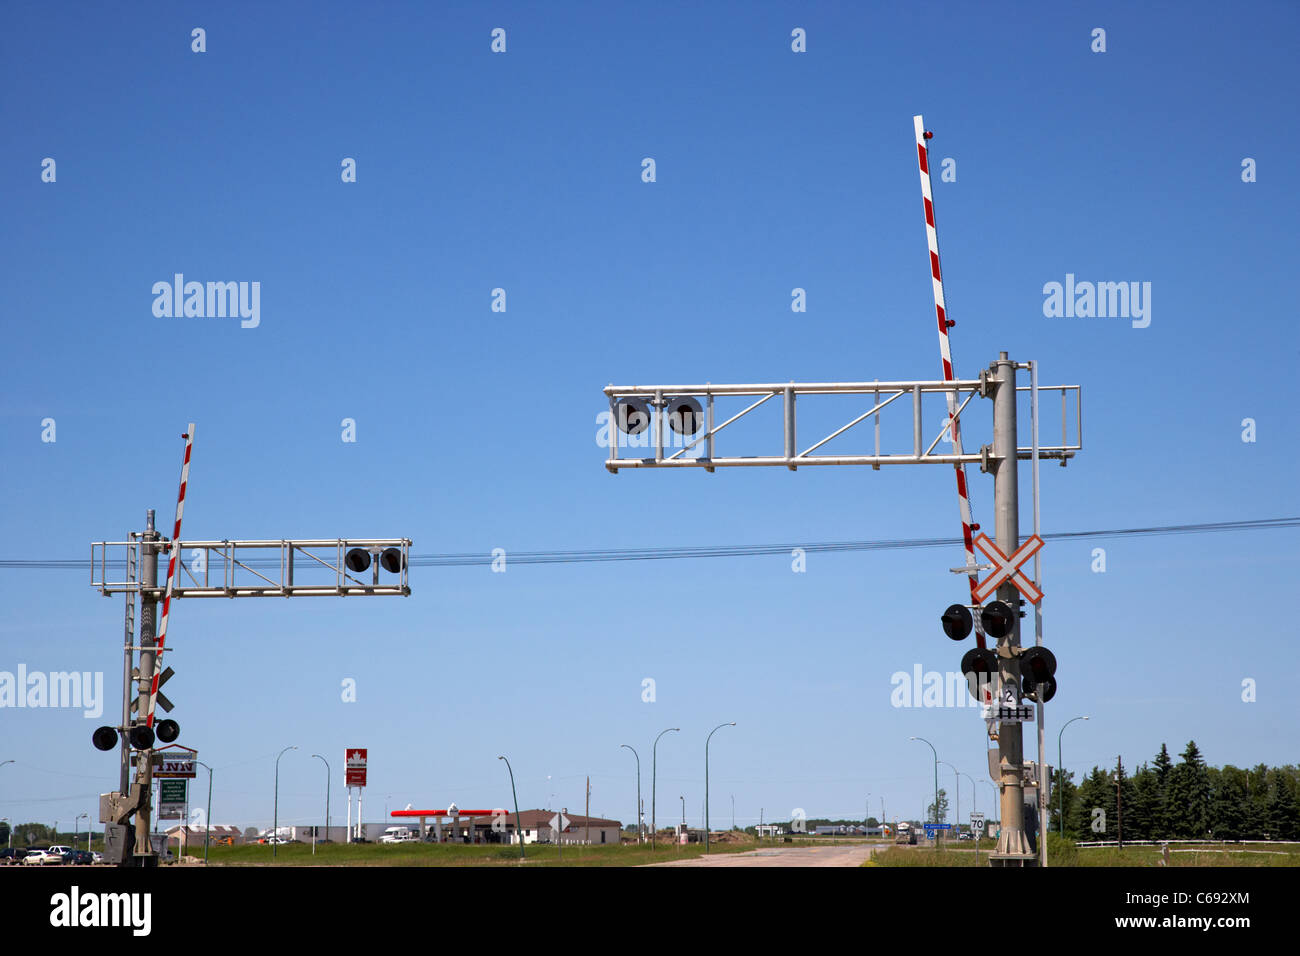 Feux de croisement ferroviaire de haut niveau et des barrières contre le ciel bleu en Saskatchewan Canada Banque D'Images